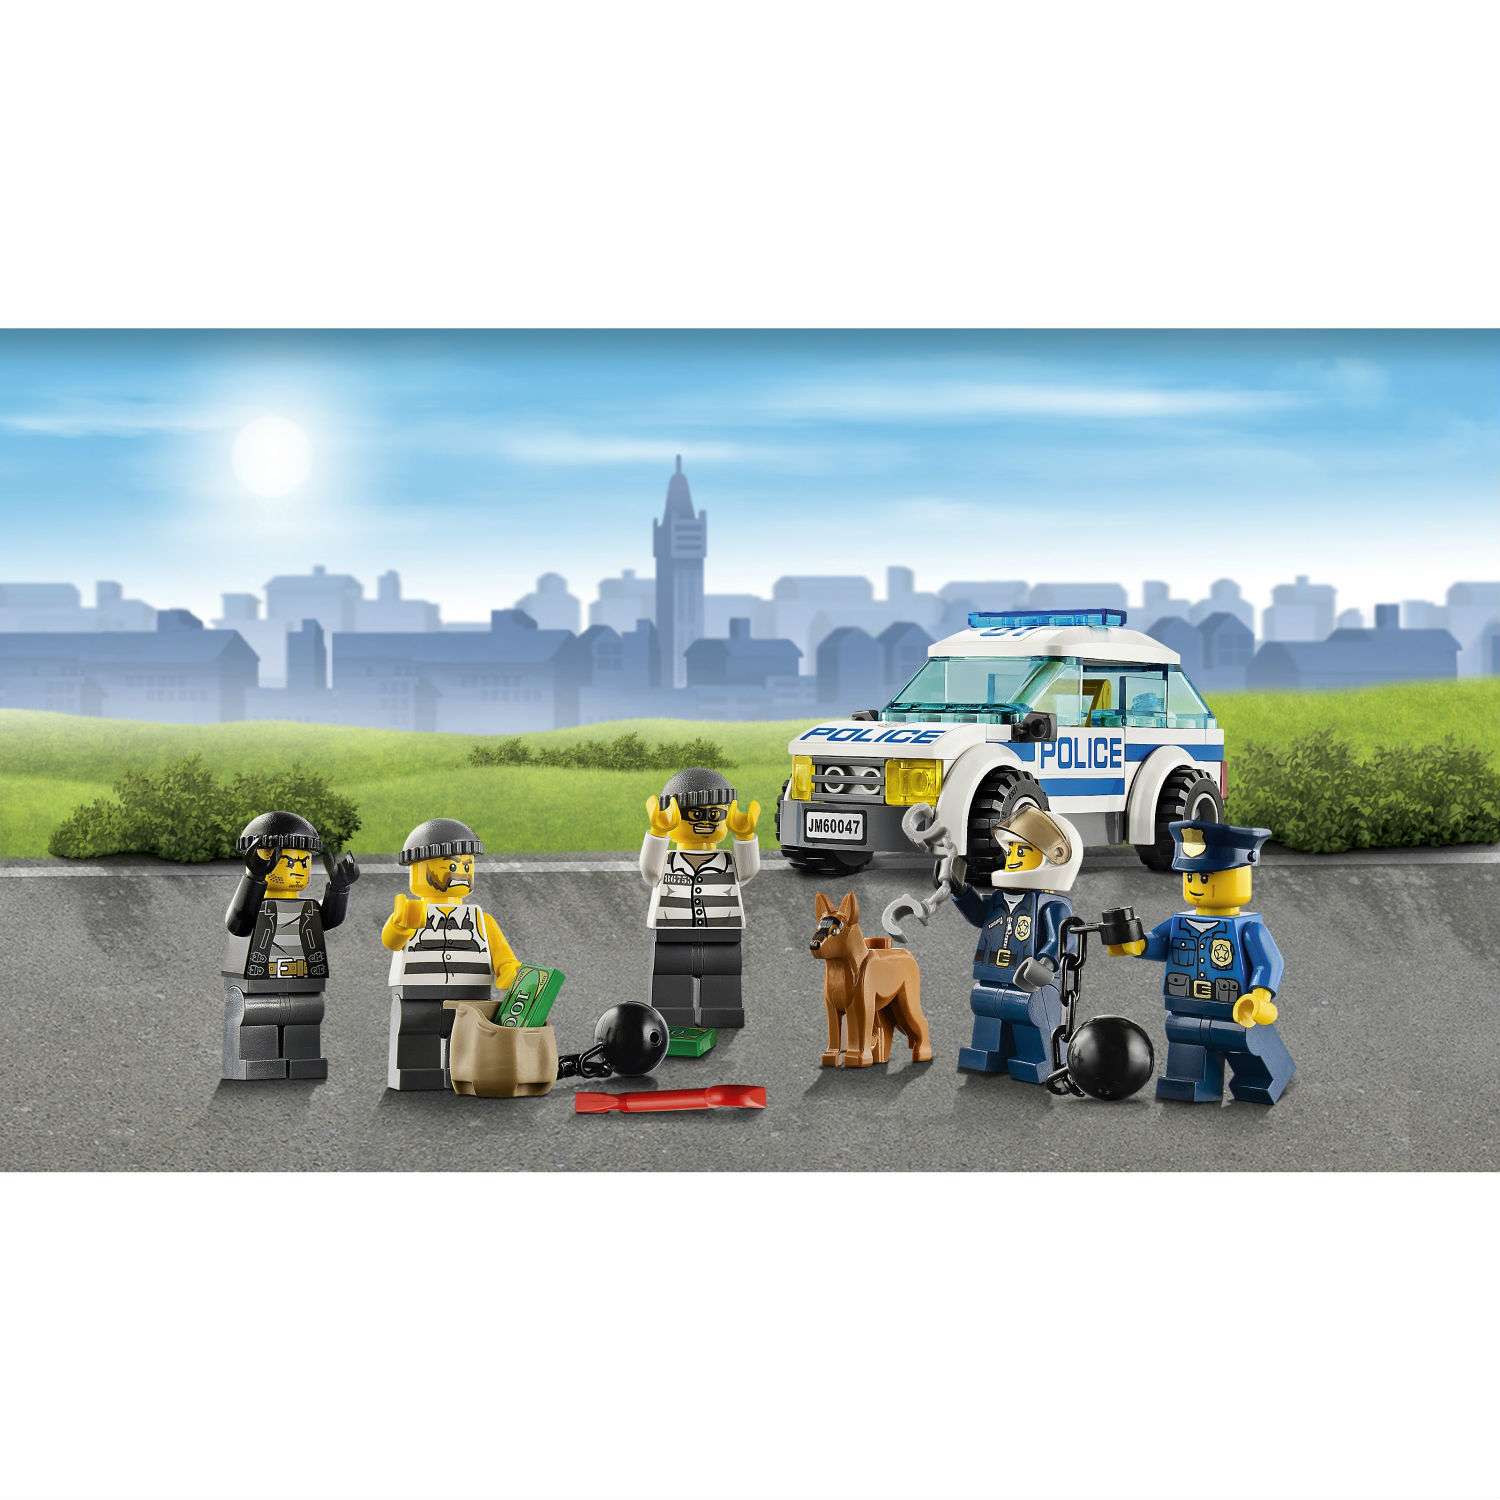 Конструктор LEGO City Police Полицейский участок (60047) - фото 5